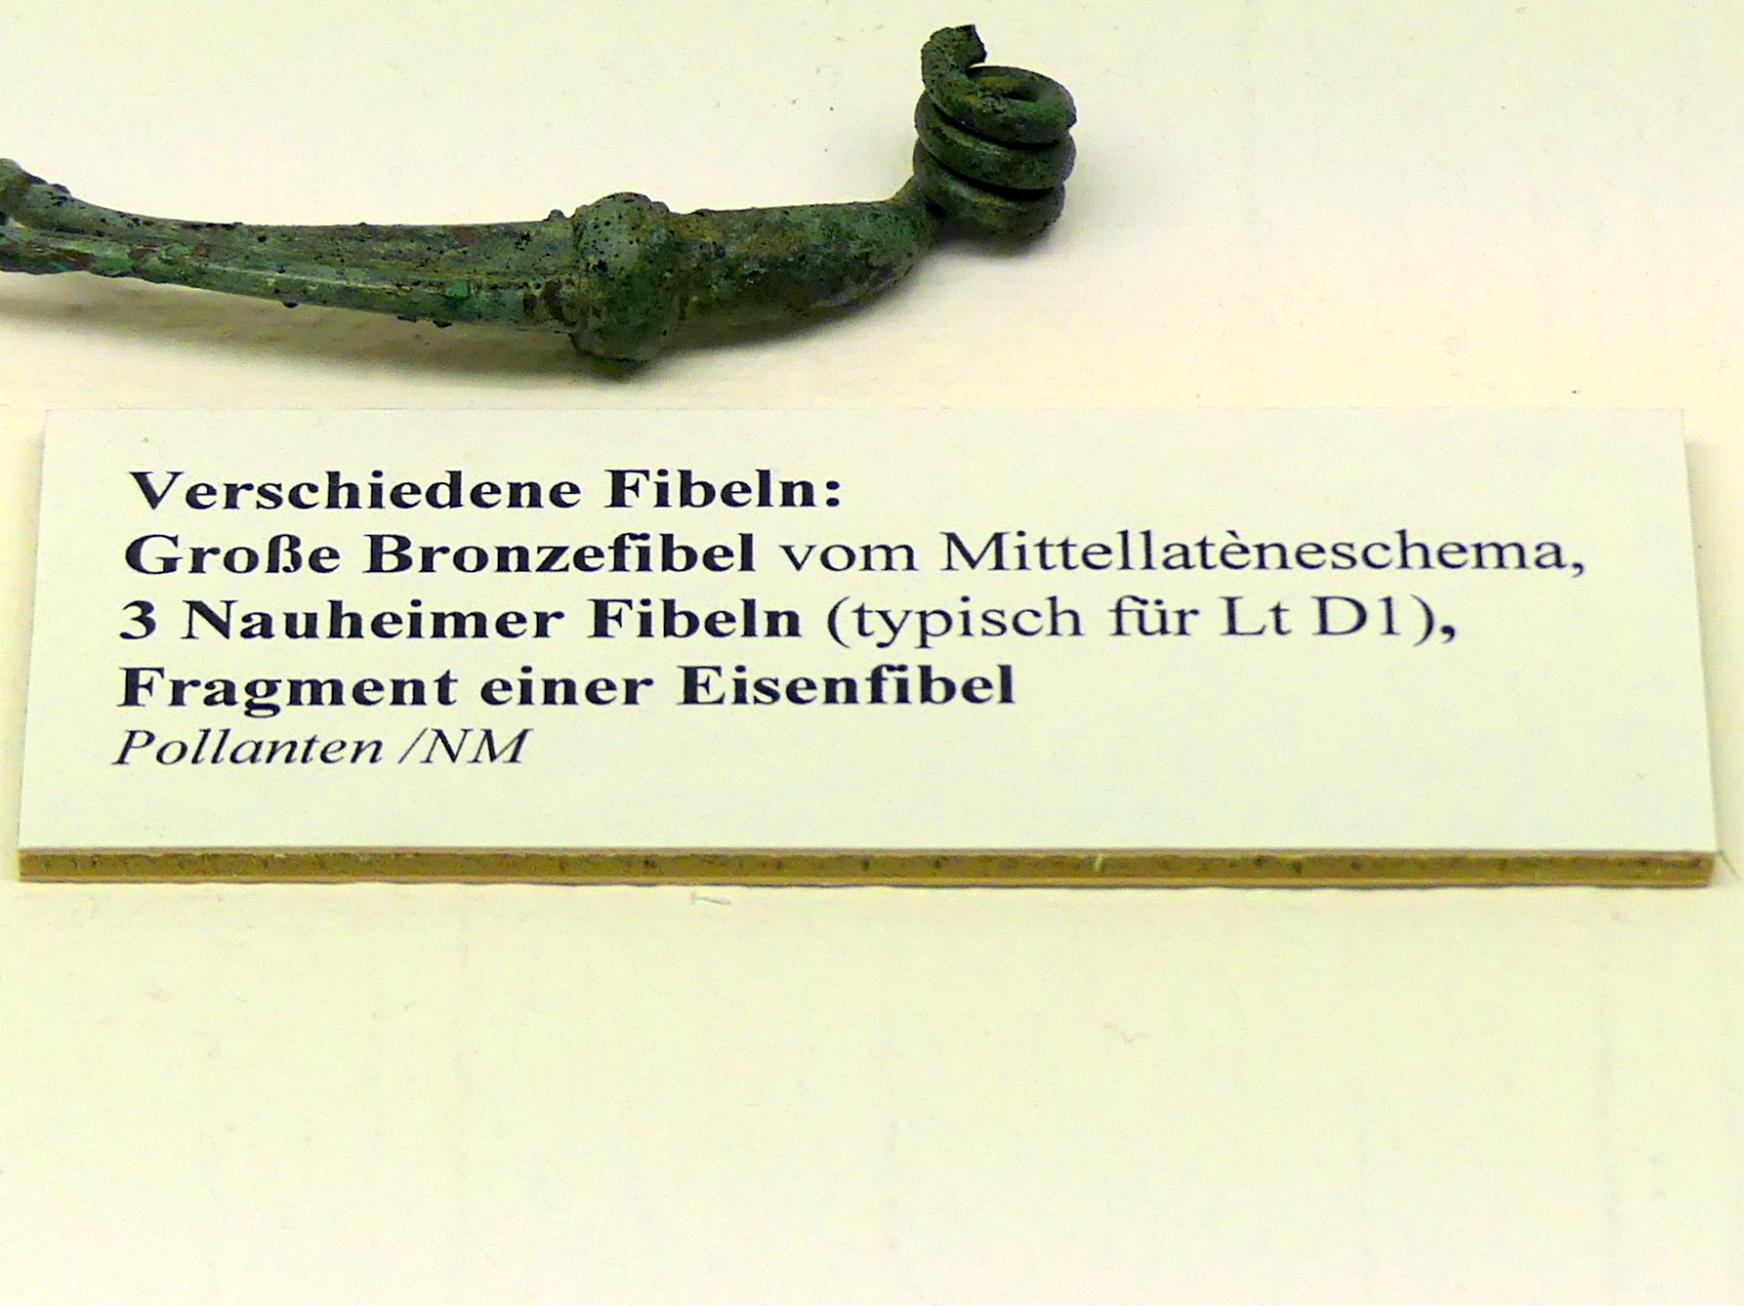 Fragment einer Eisenfibel, Spätlatènezeit D, 700 - 100 v. Chr., Bild 2/2